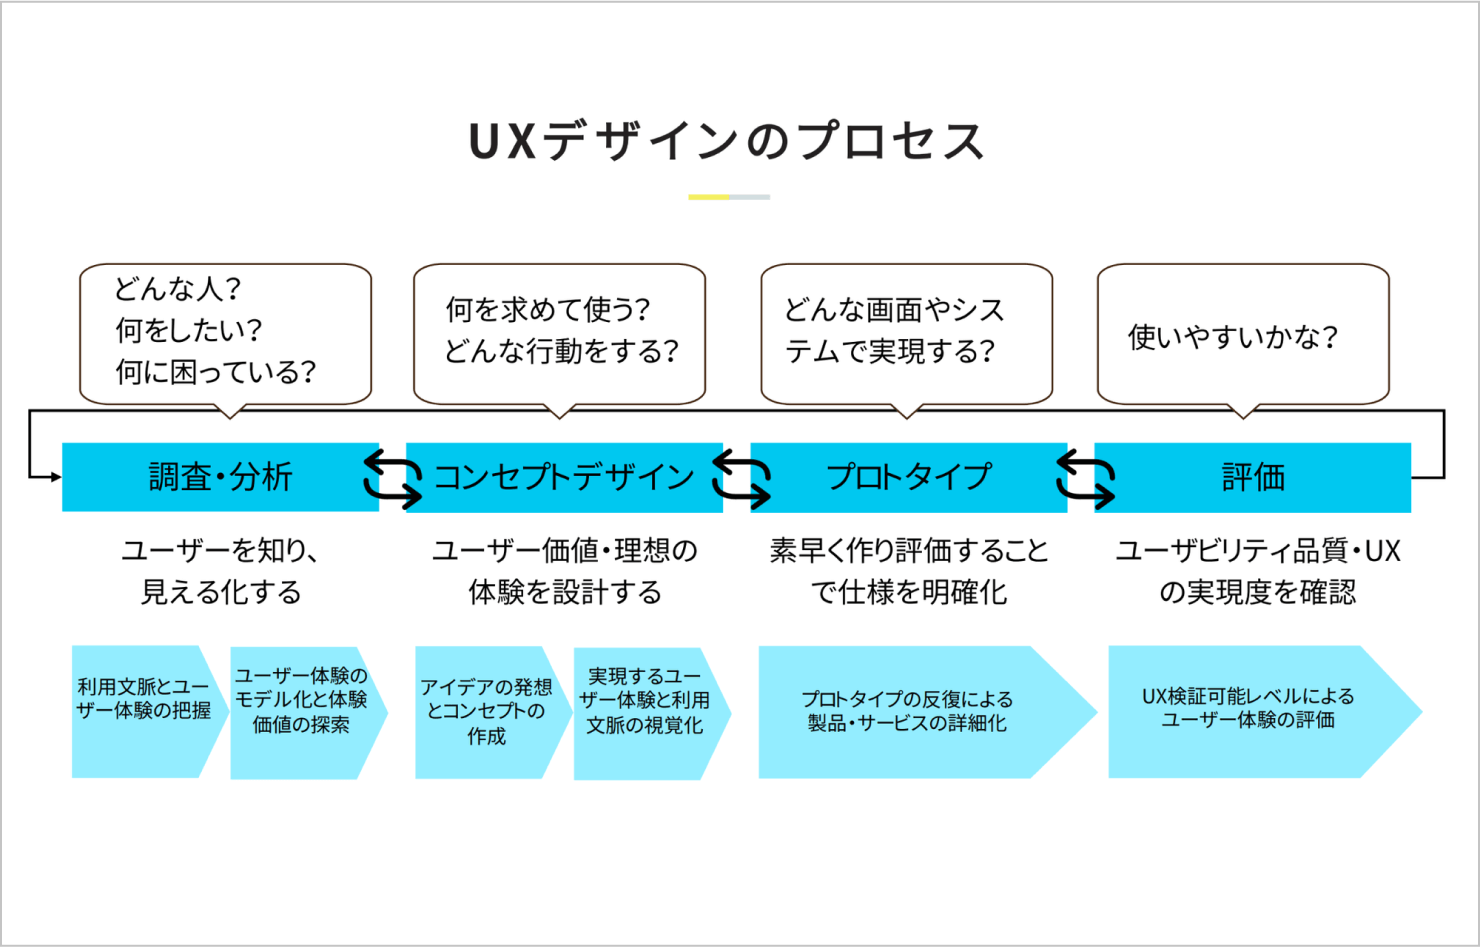 UXデザインのフロー（調査・分析、コンセプトデザイン、プロトタイプ、評価を繰り返す）を解説した資料。